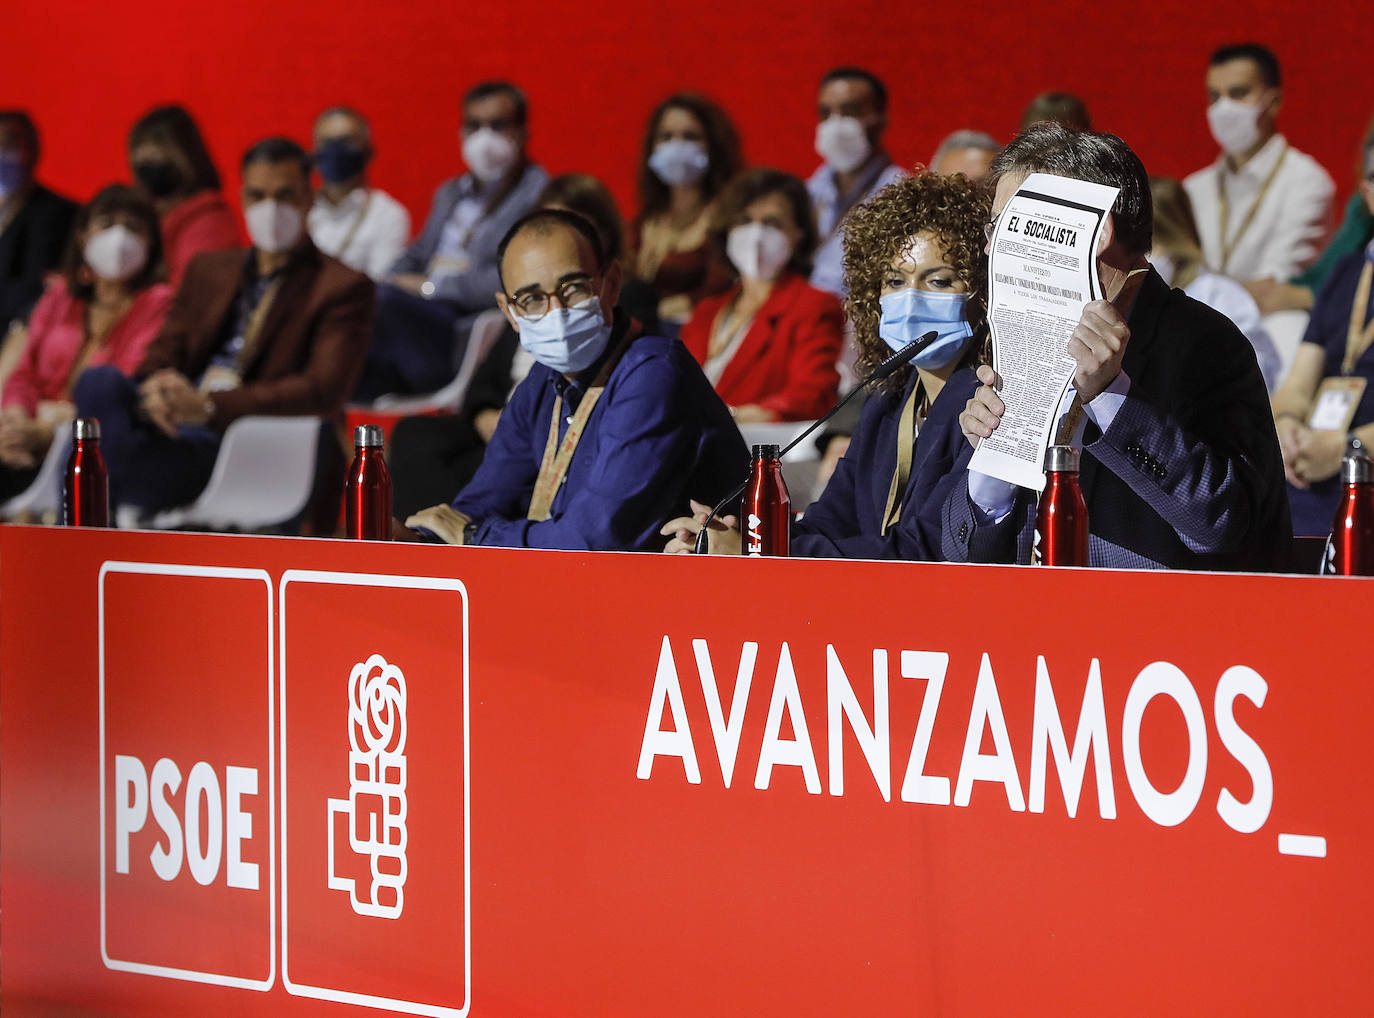 El 40 congreso del PSOE celebra su segunda jornada este sábado en Feria Valencia, en la que Ximo Puig ha intervenido ya como presidente de la mesa del cónclave. 